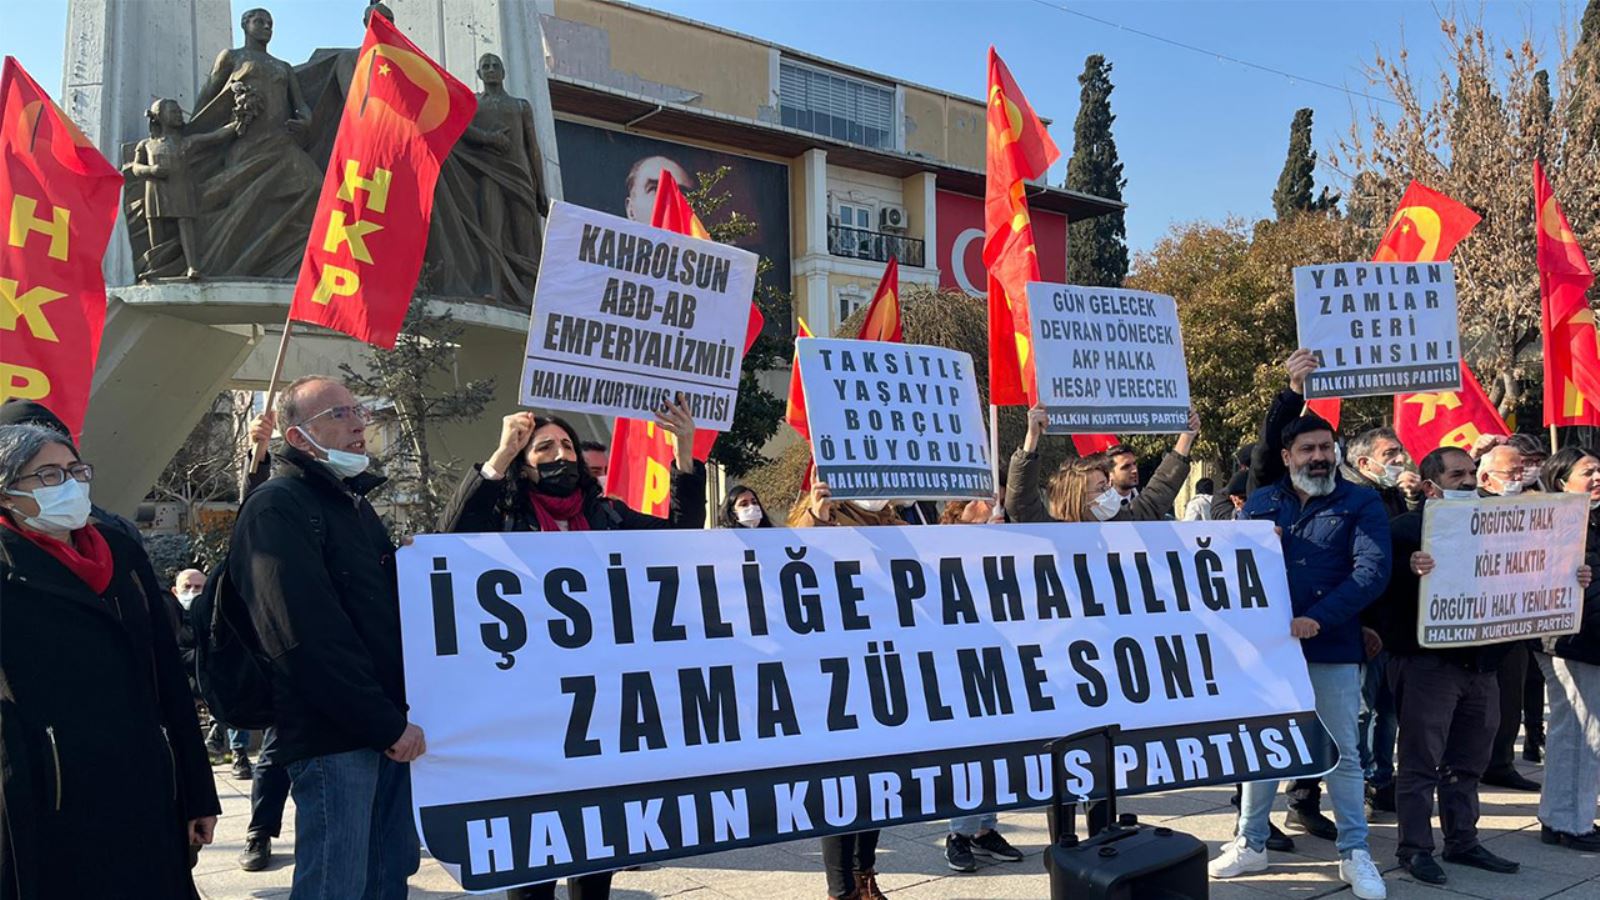 İstanbul'da 'zam' eylemi: 'Taksitle yaşayıp borçlu ölüyoruz'